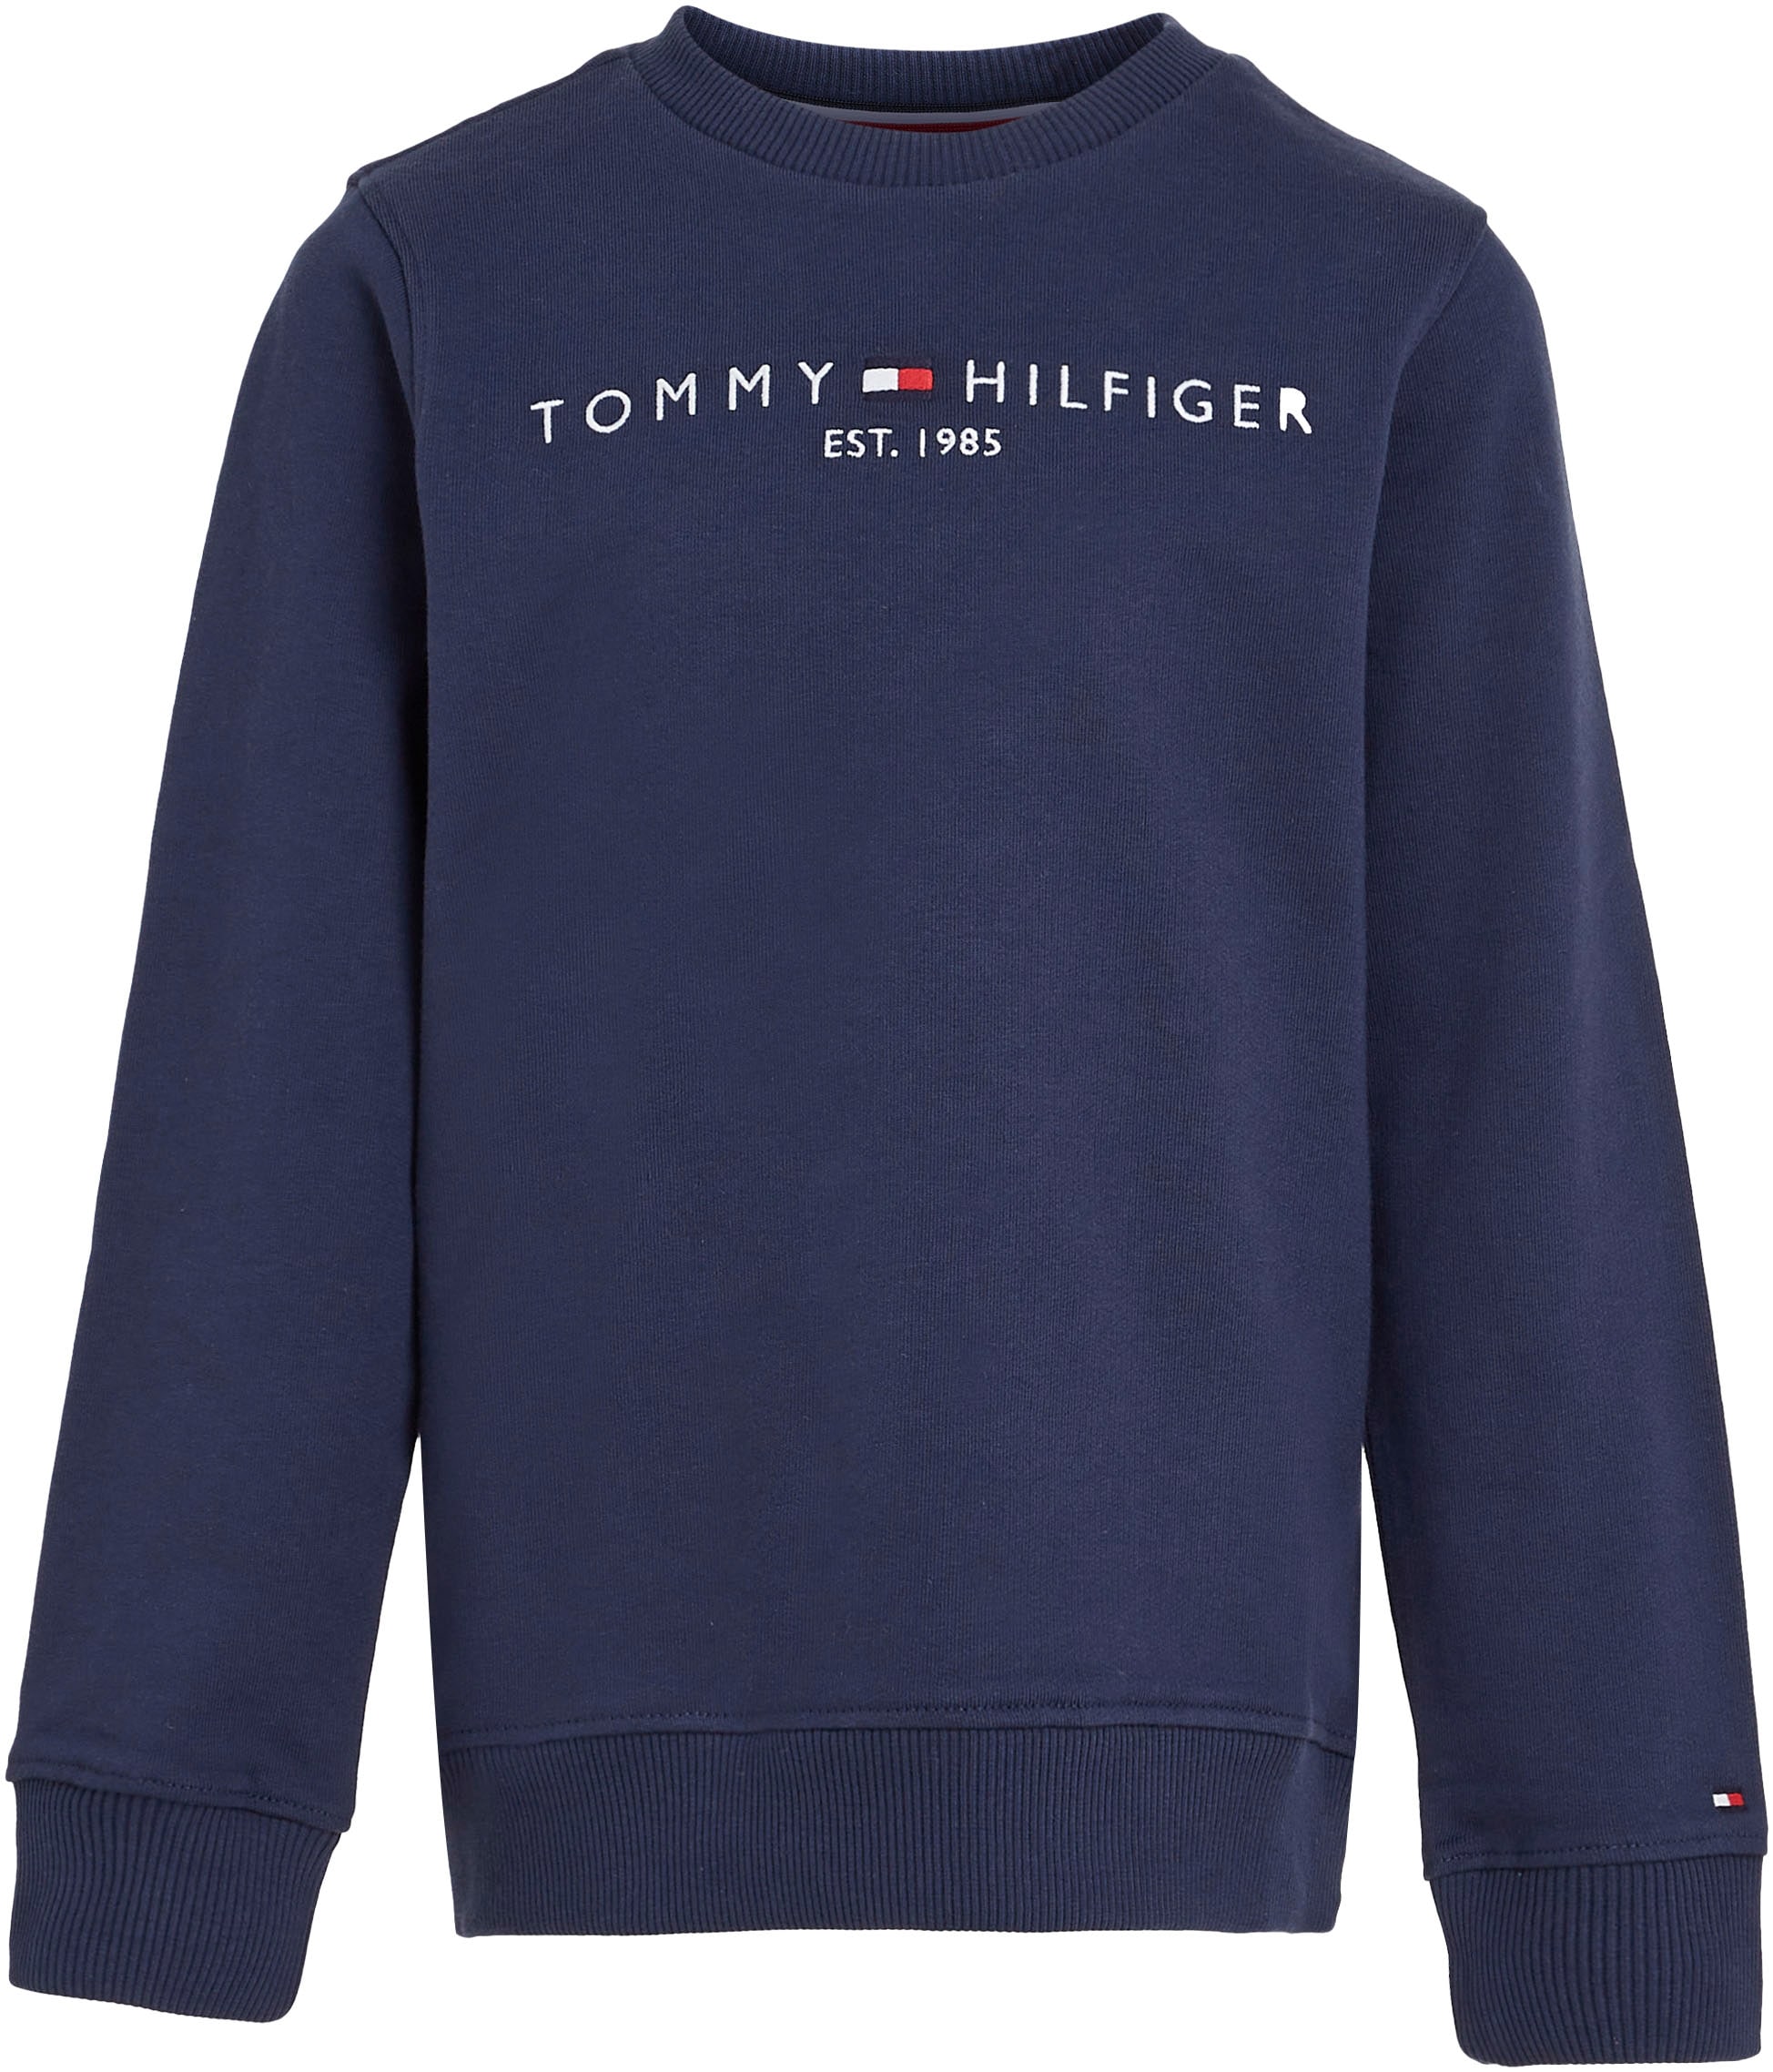 Online-Shop SWEATSHIRT«, Mädchen Sweatshirt Junior im Tommy Hilfiger und Kinder Jungen »ESSENTIAL bestellen MiniMe,für Kids